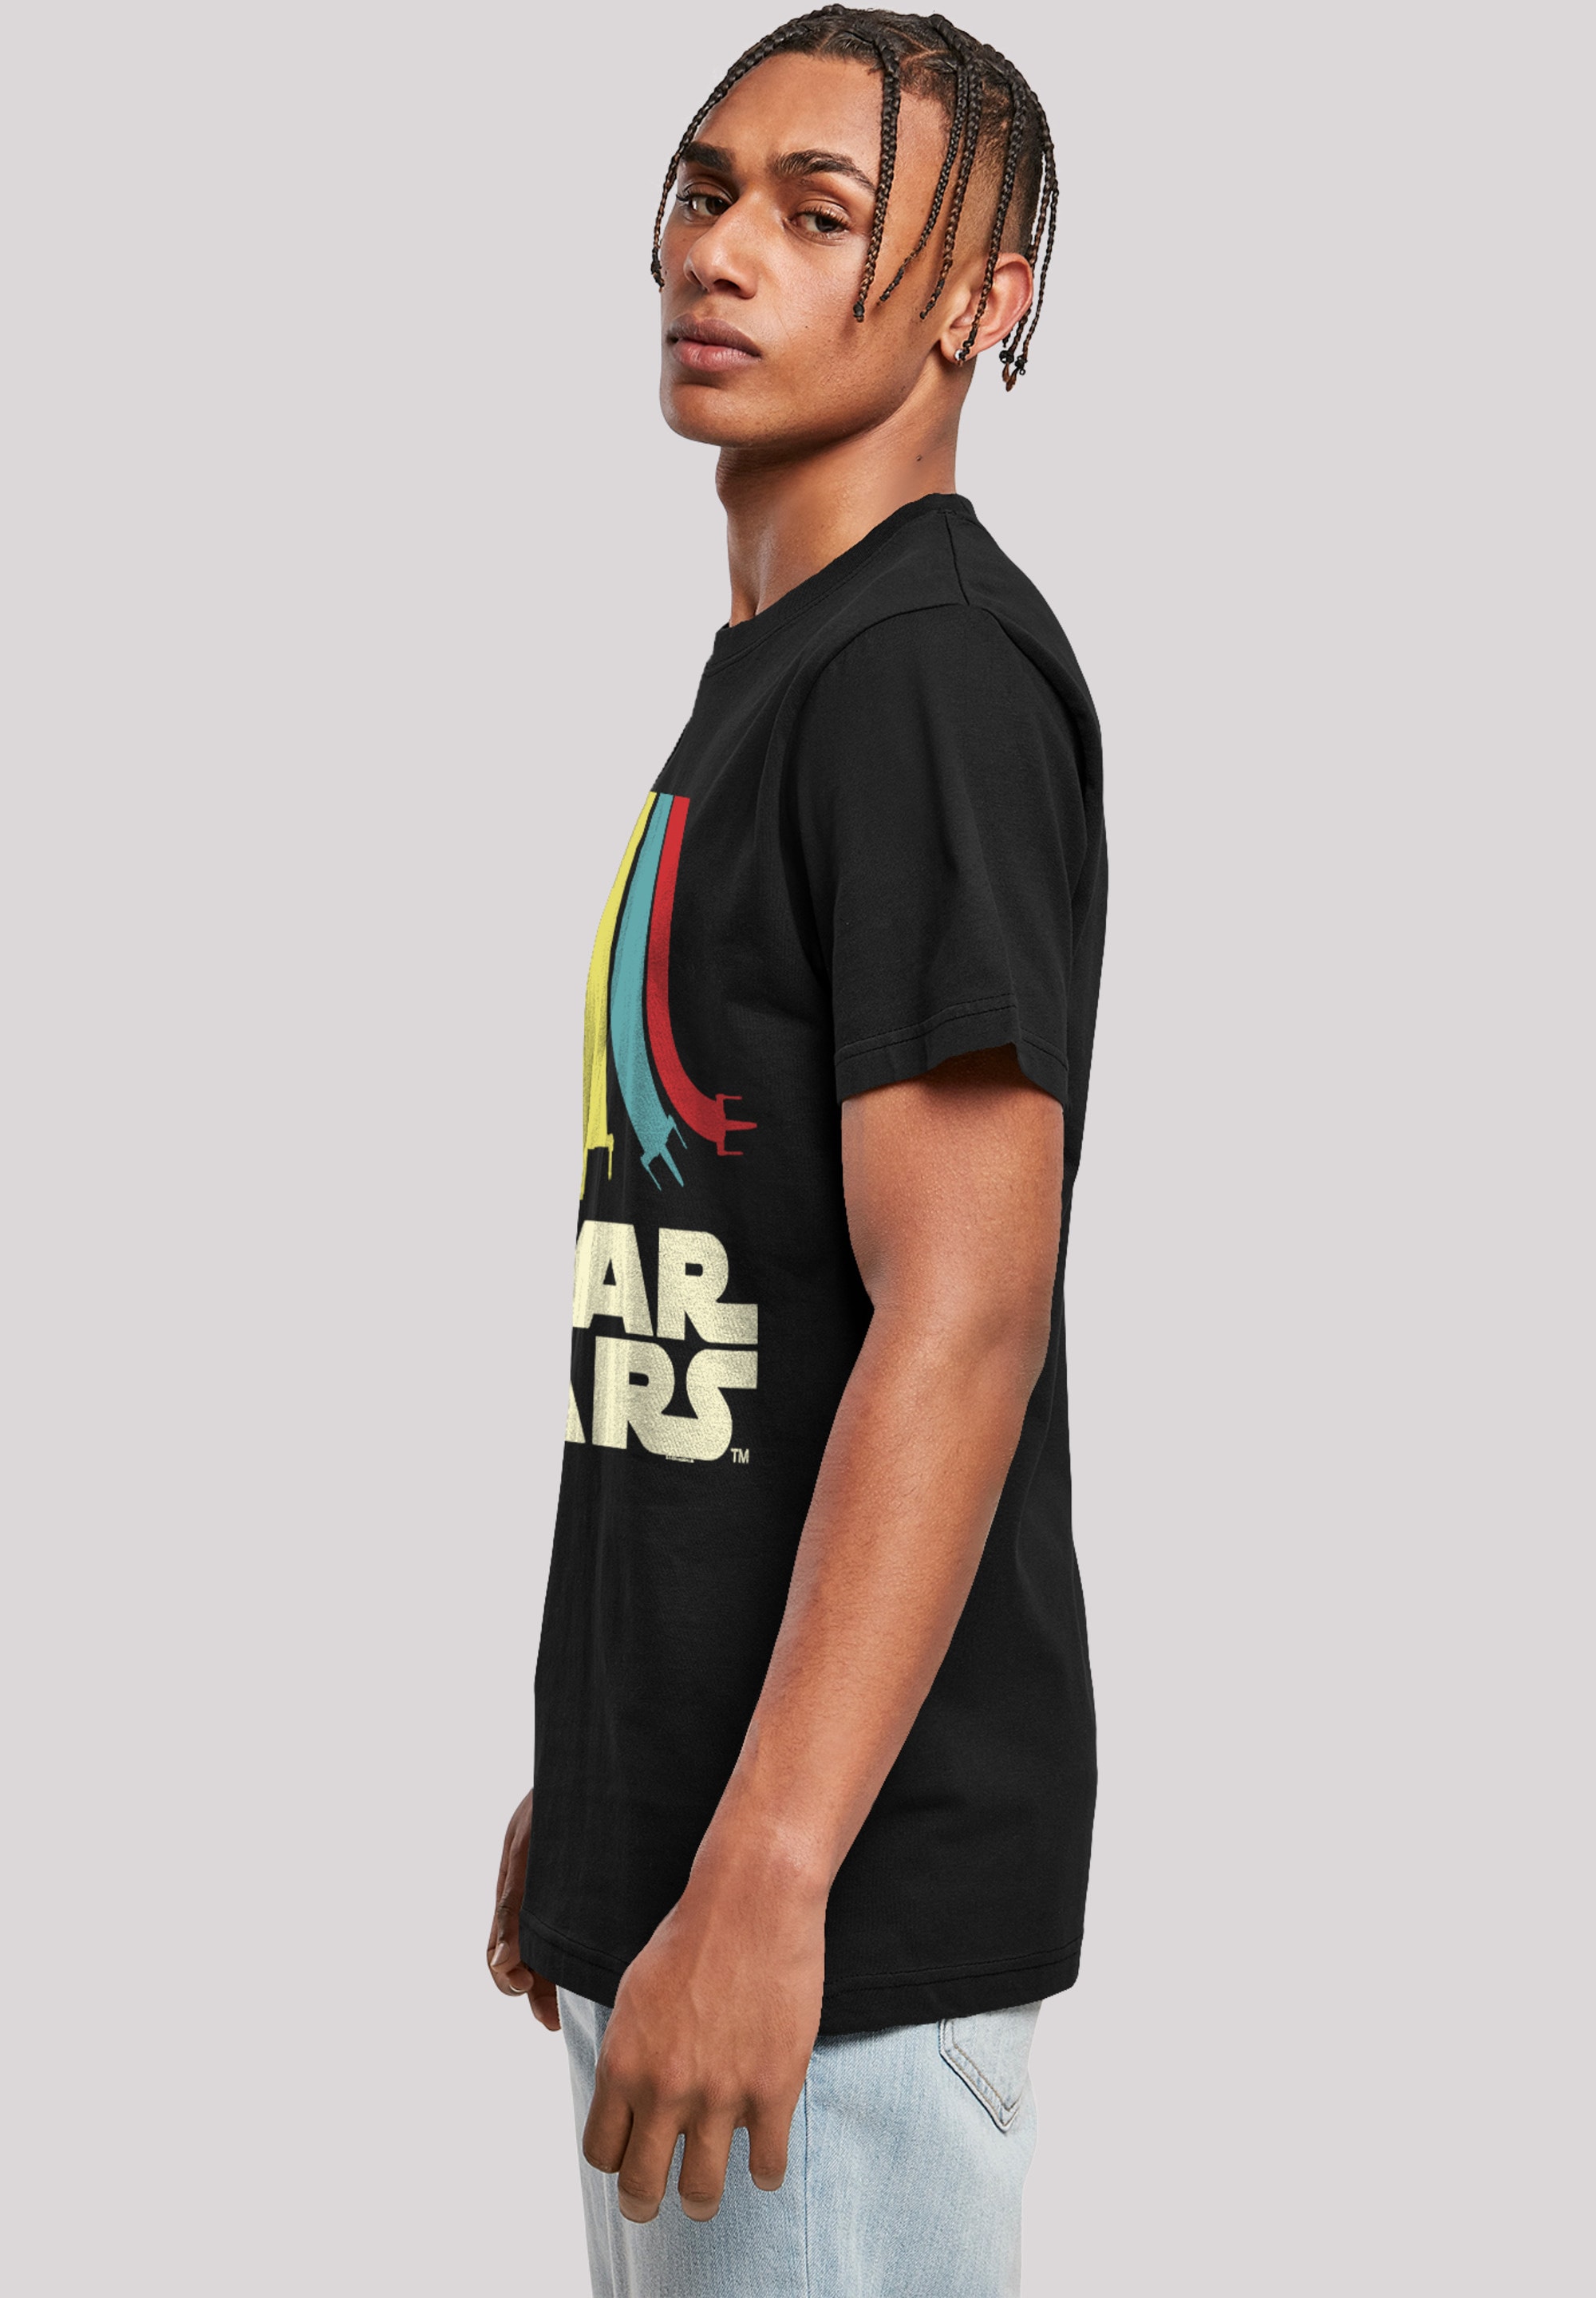 F4NT4STIC T-Shirt »Star Wars Retro Rainbow Regenbogen«, Print